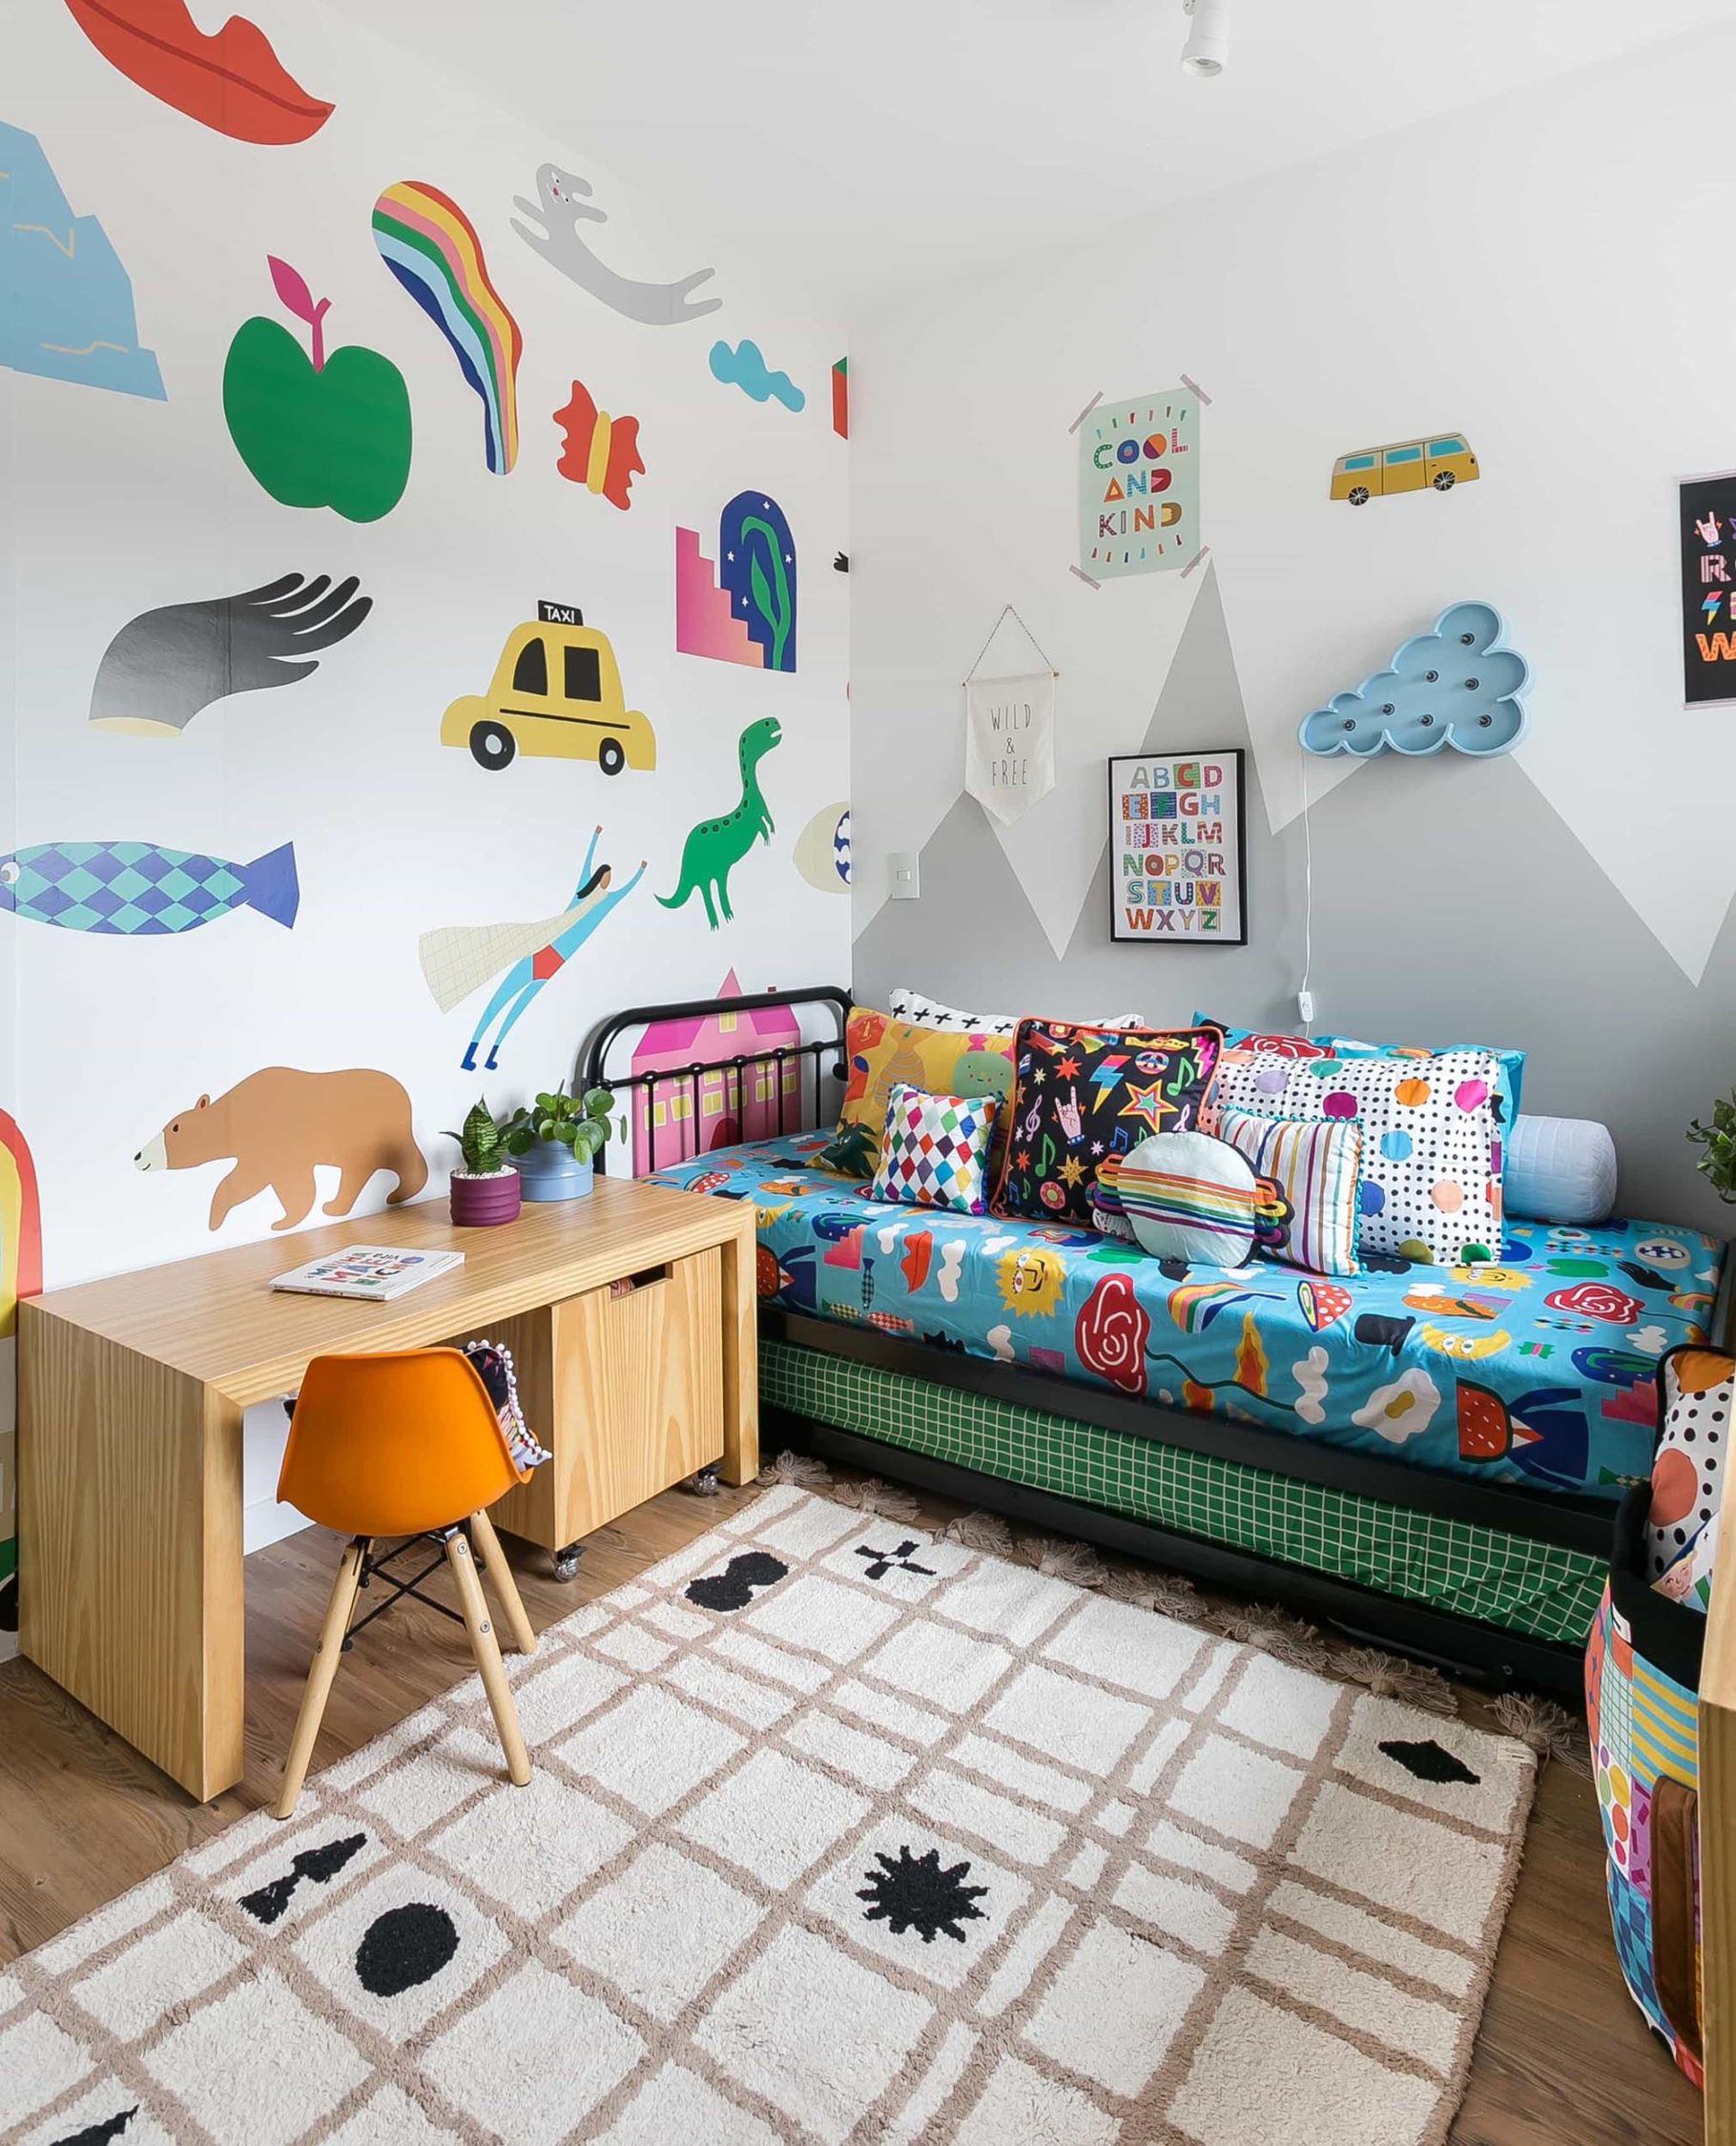 Segredos de como misturar móveis coloridos em uma decoração muito alegre e divertida para quarto de menino